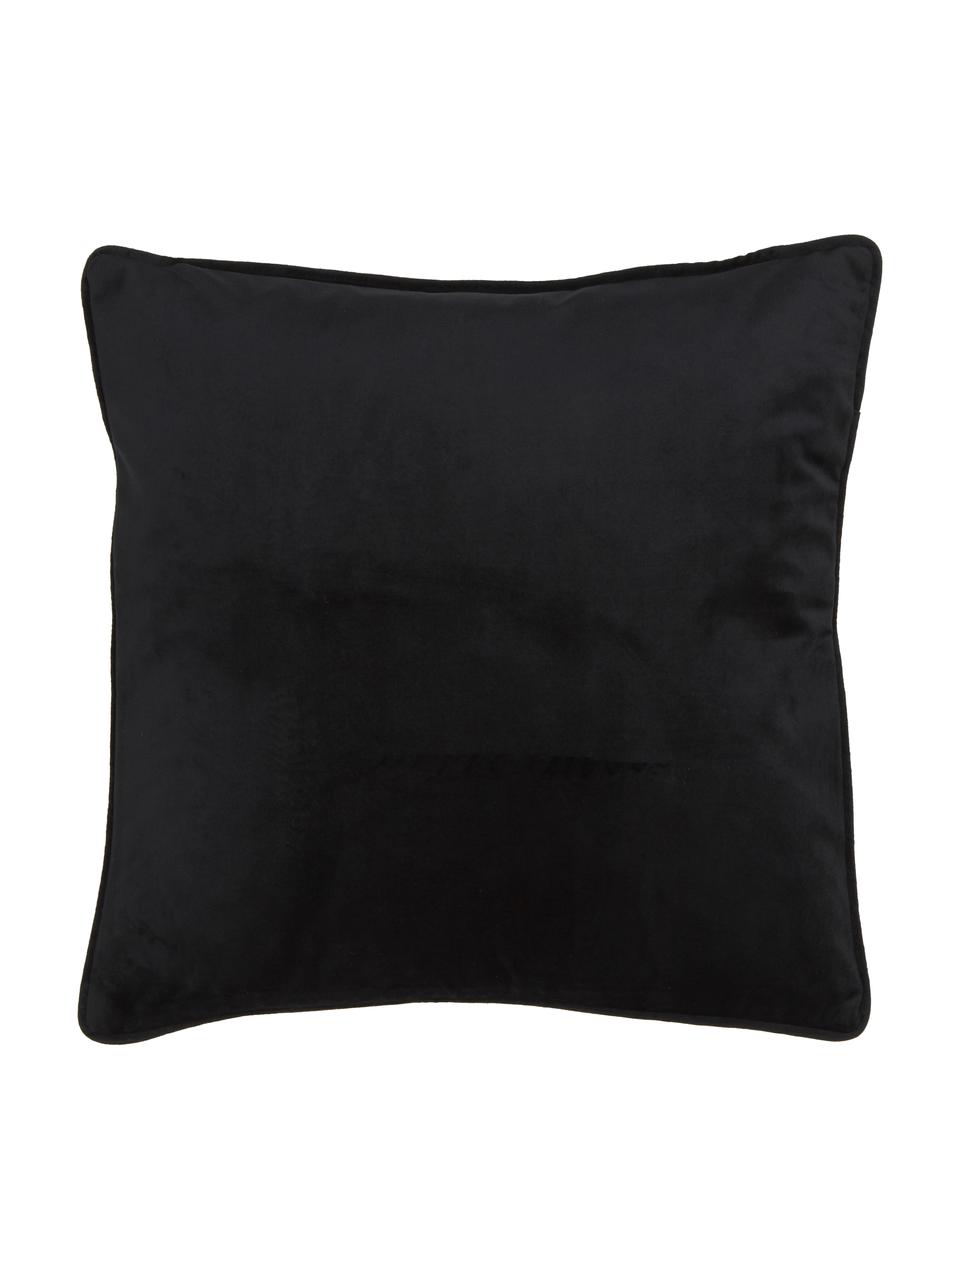 Poszewka na poduszkę z aksamitu Blossom, 100% aksamit poliestrowy, Czarny, S 45 x D 45 cm